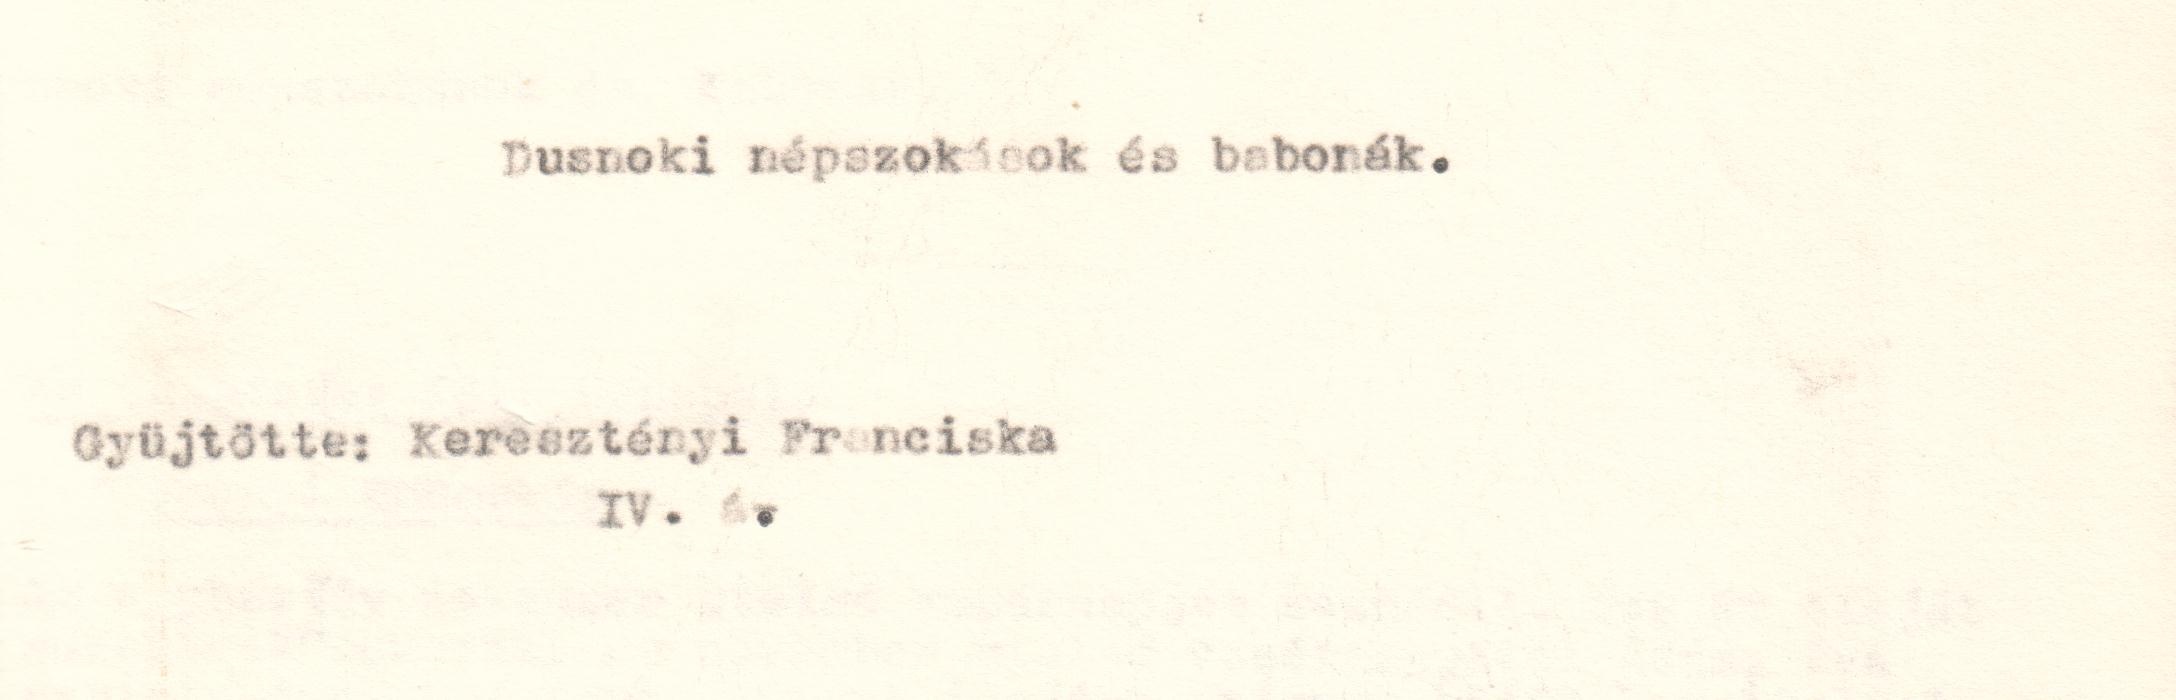 Dusnoki népszokások és babonák c. gyűjtés gépirata (Viski Károly Múzeum Kalocsa RR-F)